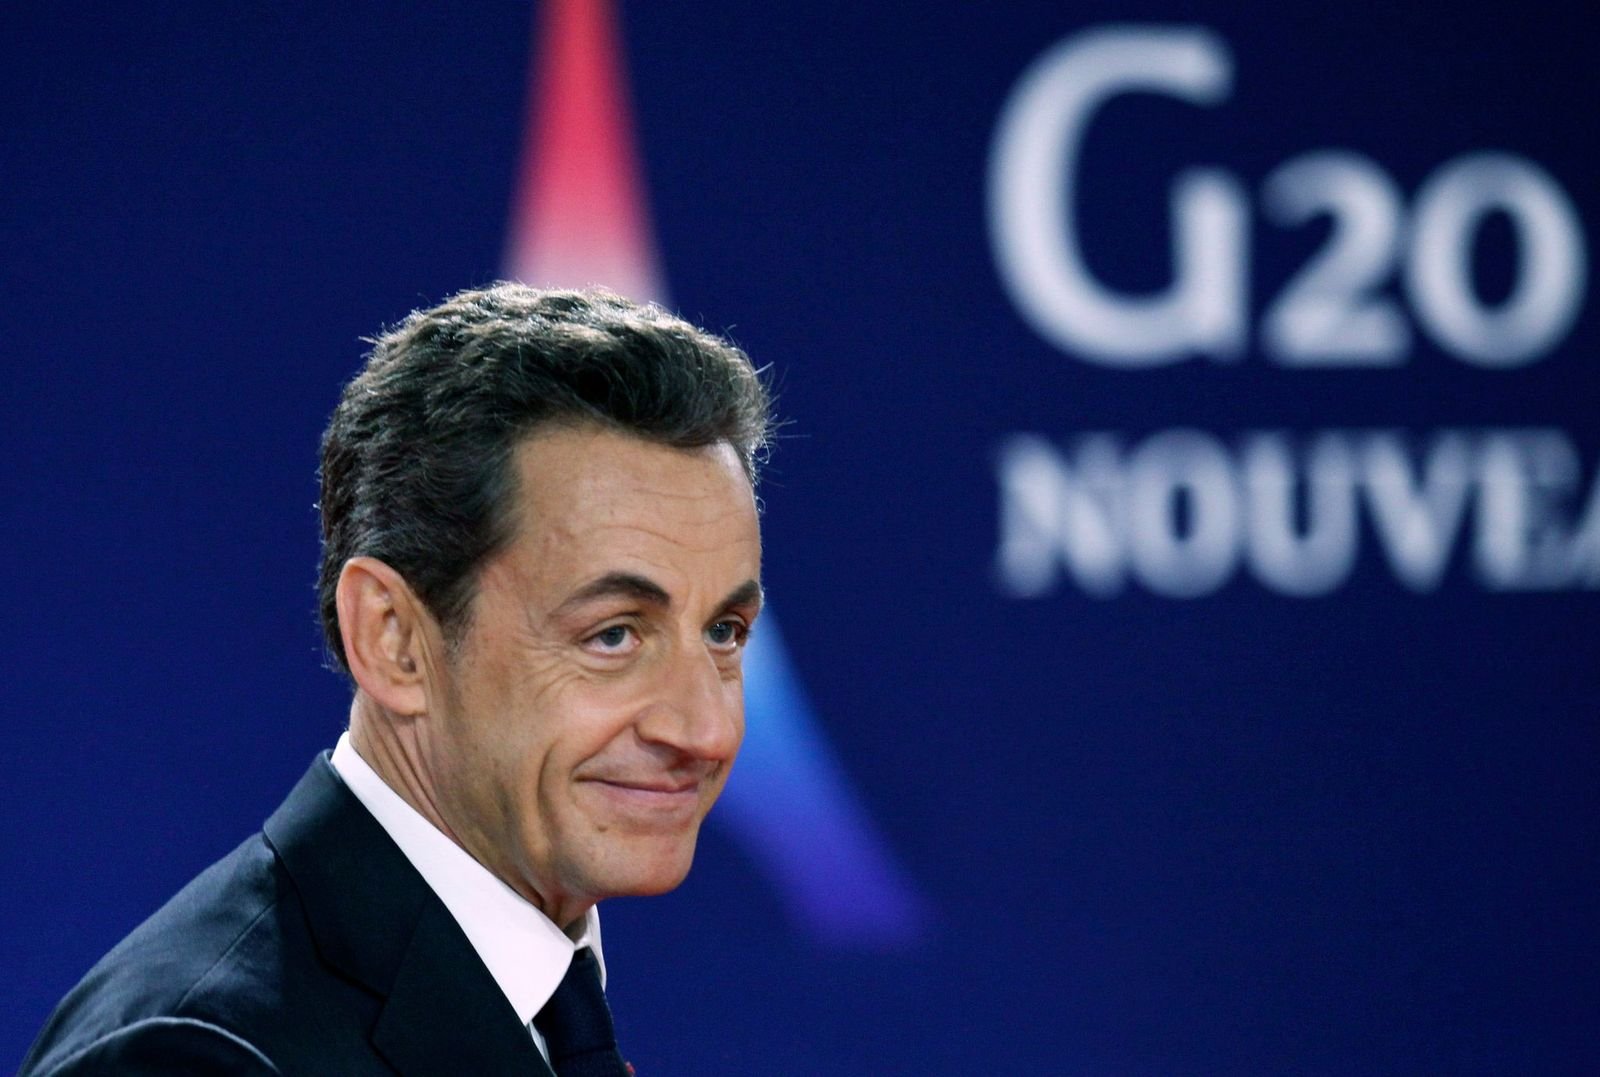 Le président de la République Nicolas Sarkozy | Photo : Getty Images